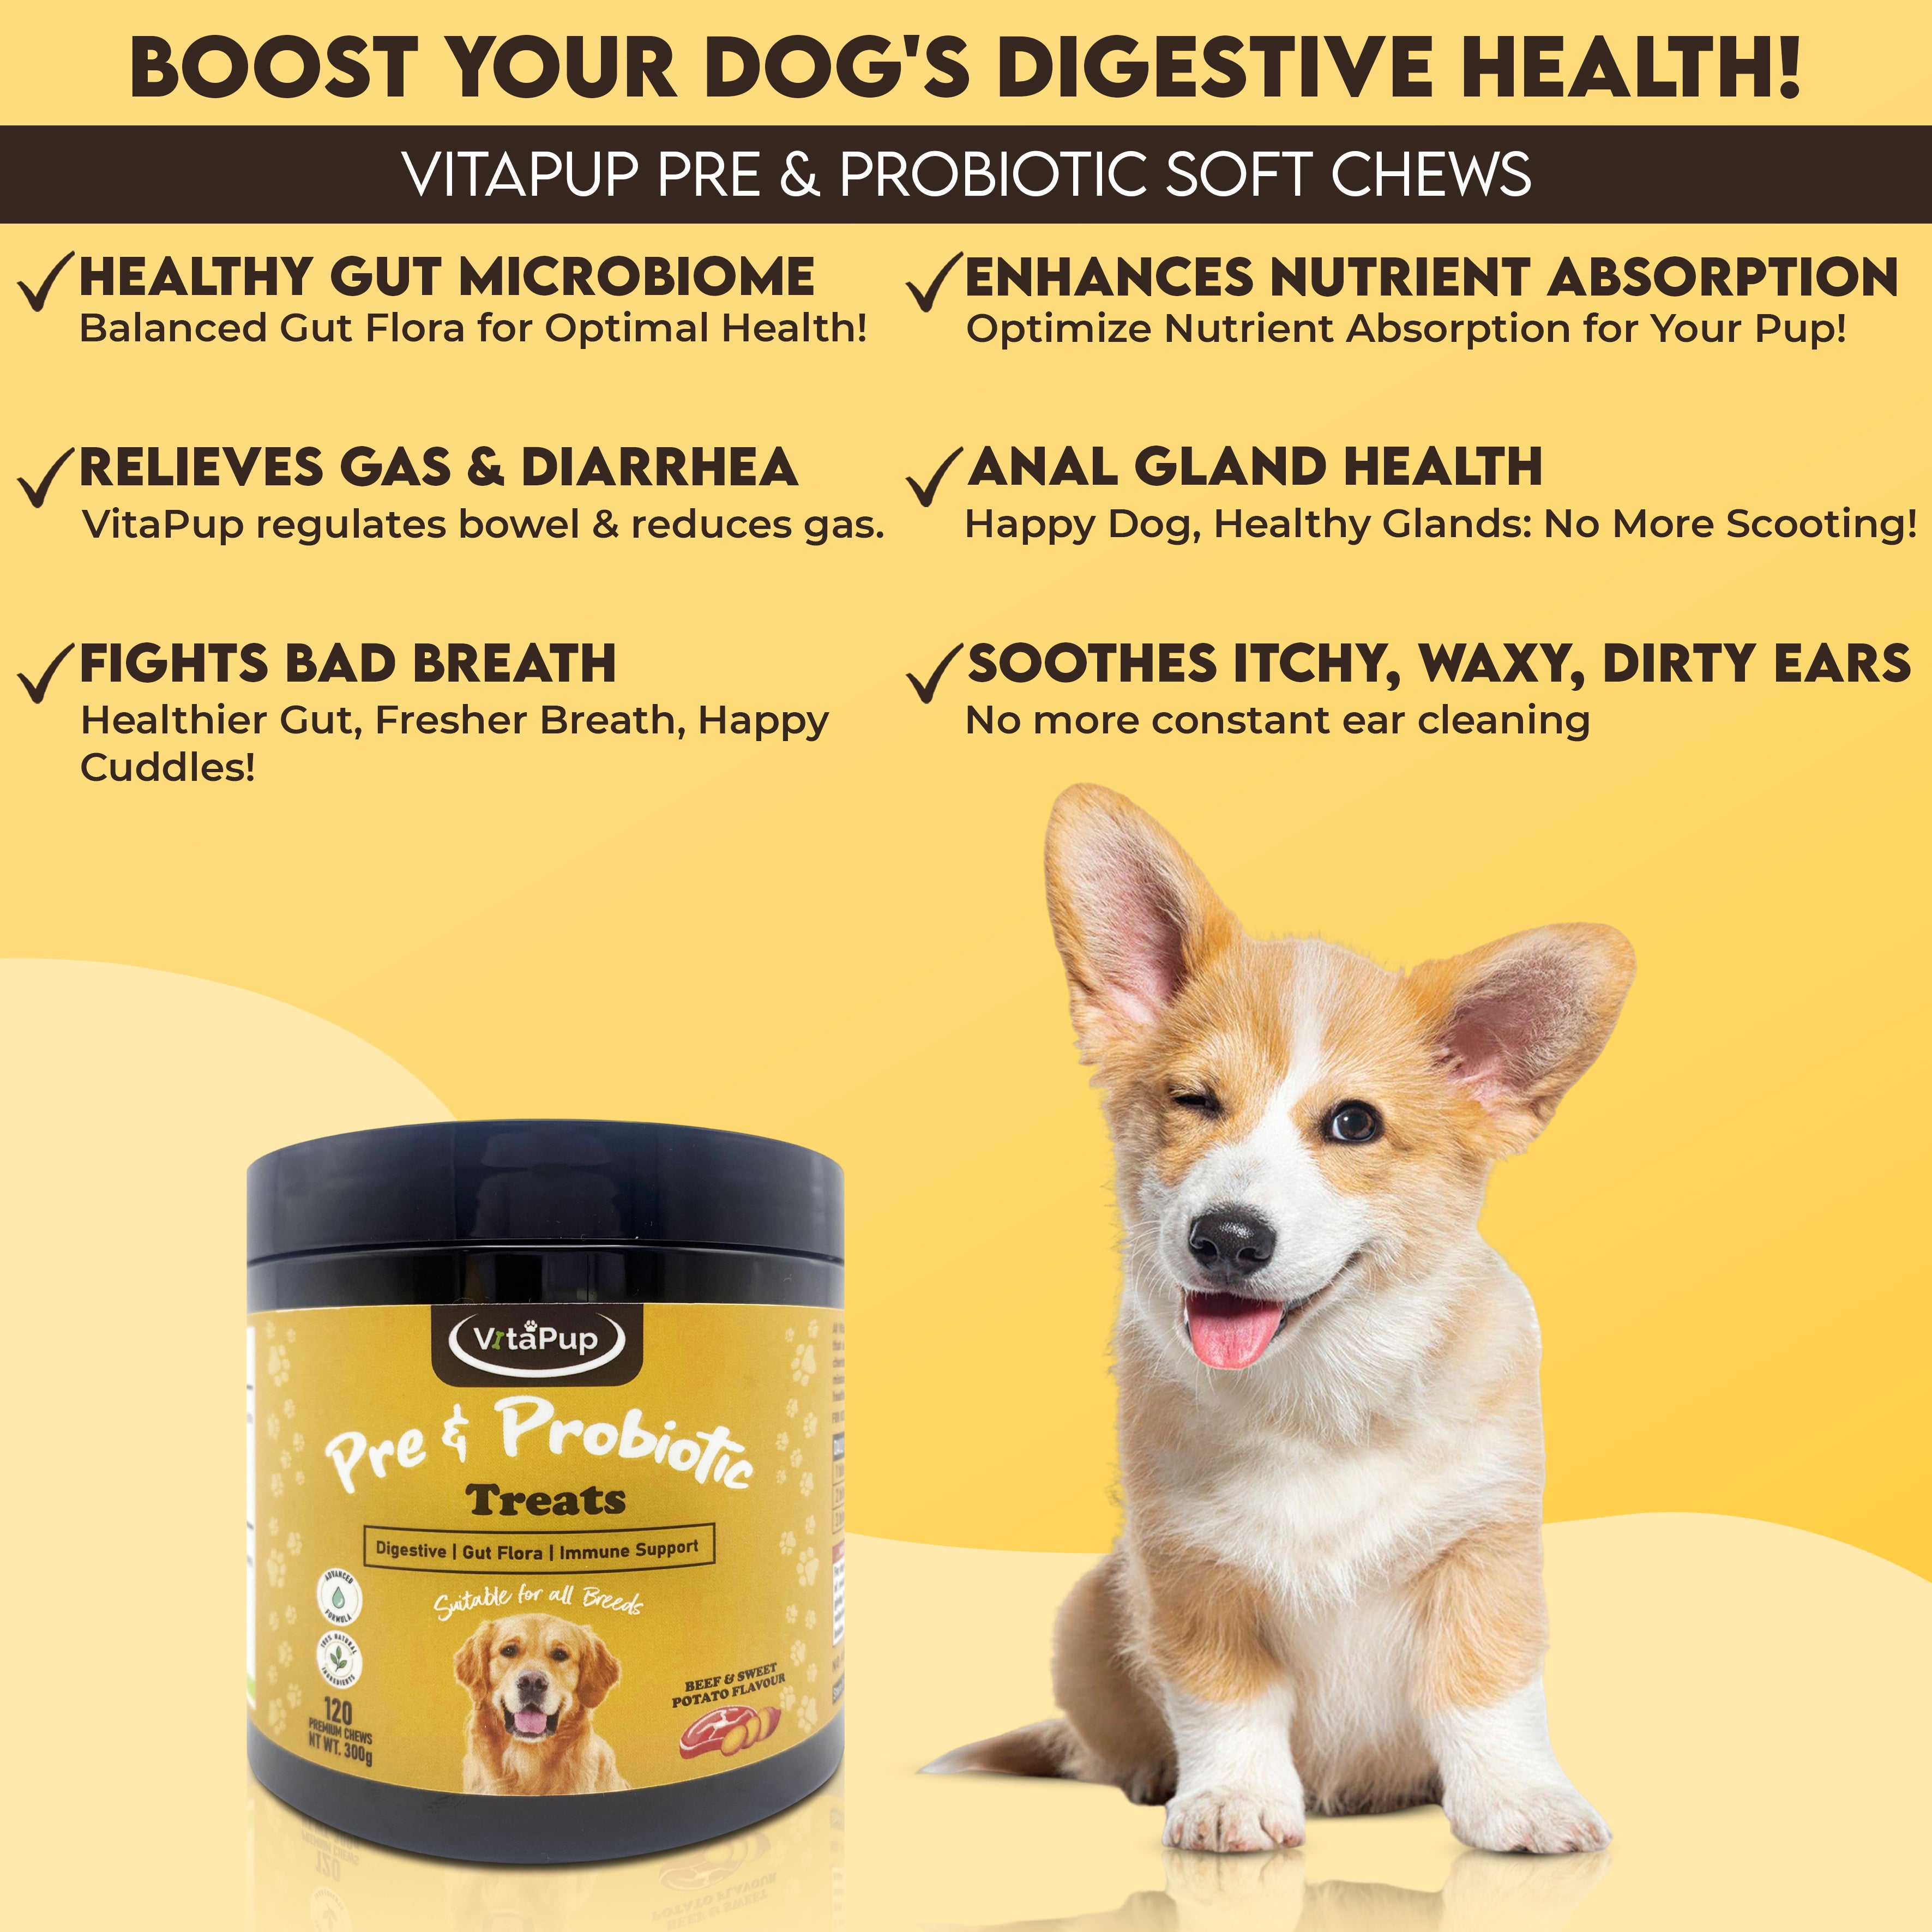 VitaPup Pre & Probiotic Dog Treats